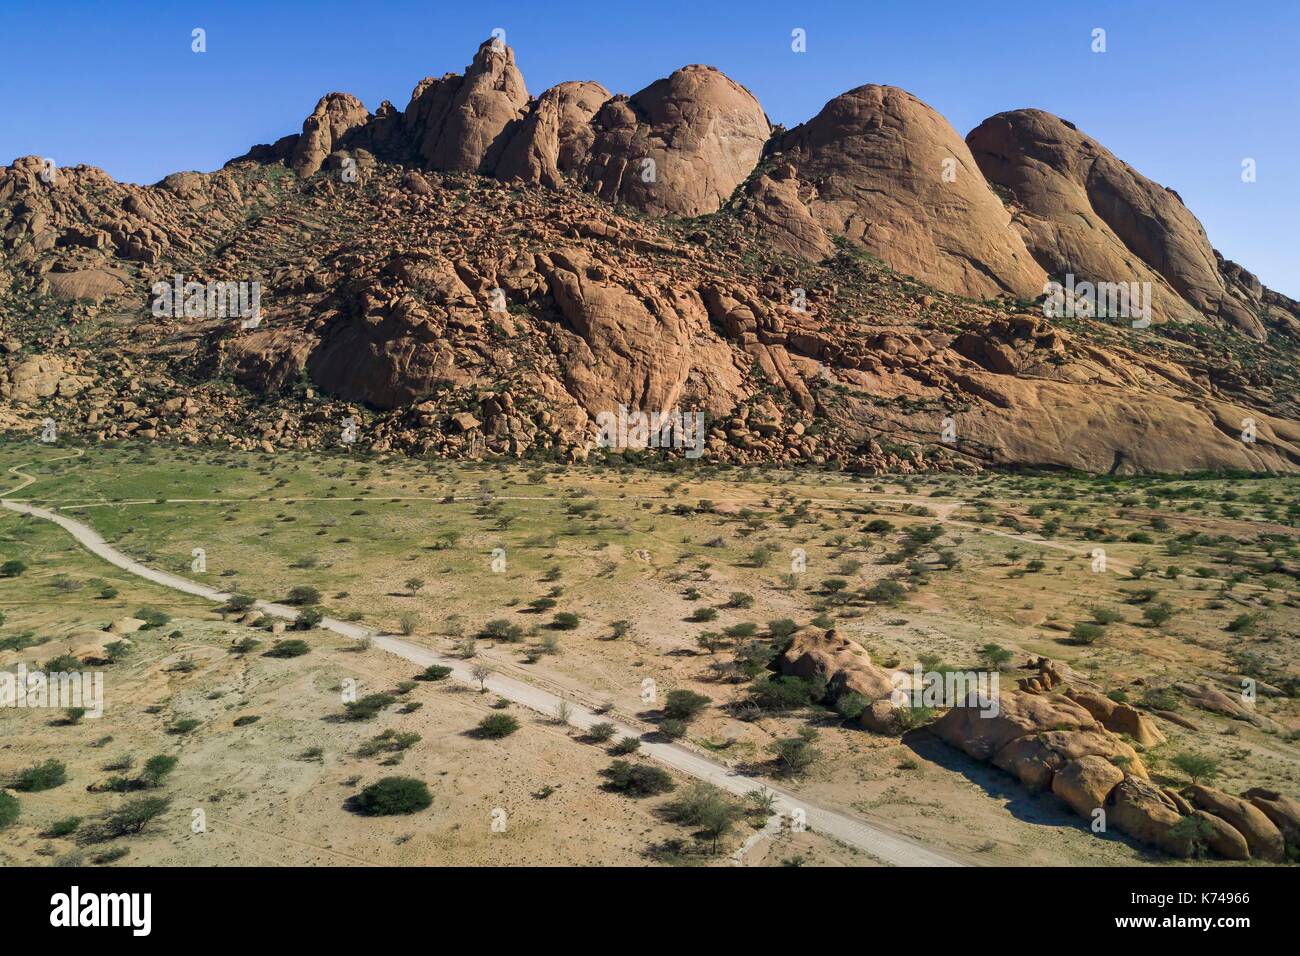 Namibia, Erongo region, Damaraland, the Great Spitzkoppe or Spitzkop (1784 m), granite mountain in the Namib Desert (aerial view) Stock Photo